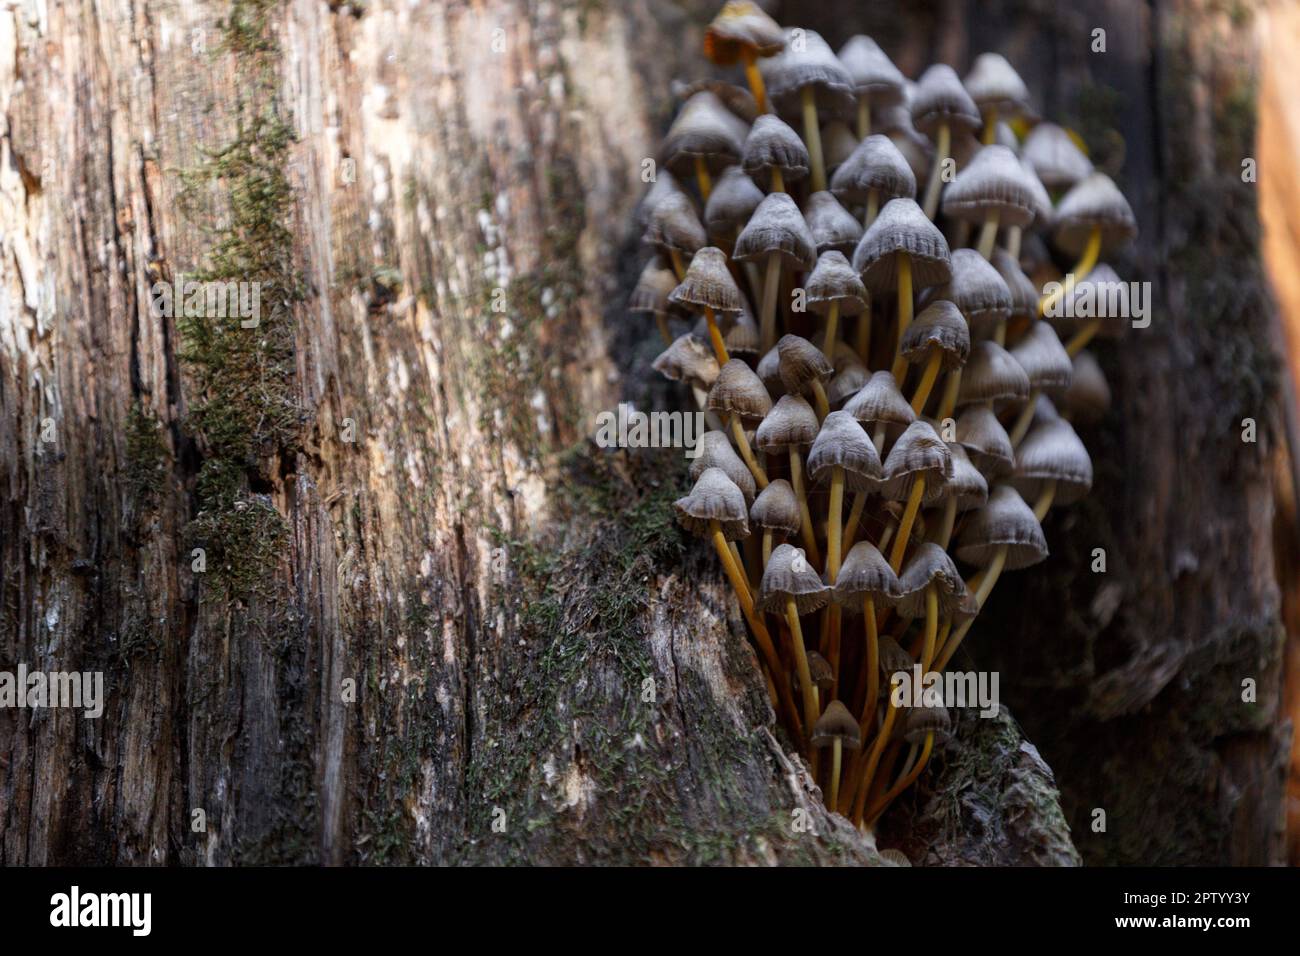 Champignons. Tabouret, champignon toxique. Champignons de forêt sur un tronc d'arbre pourri avec de la mousse. Un groupe de champignons toxiques et de mousse sur la souche pourrie Banque D'Images